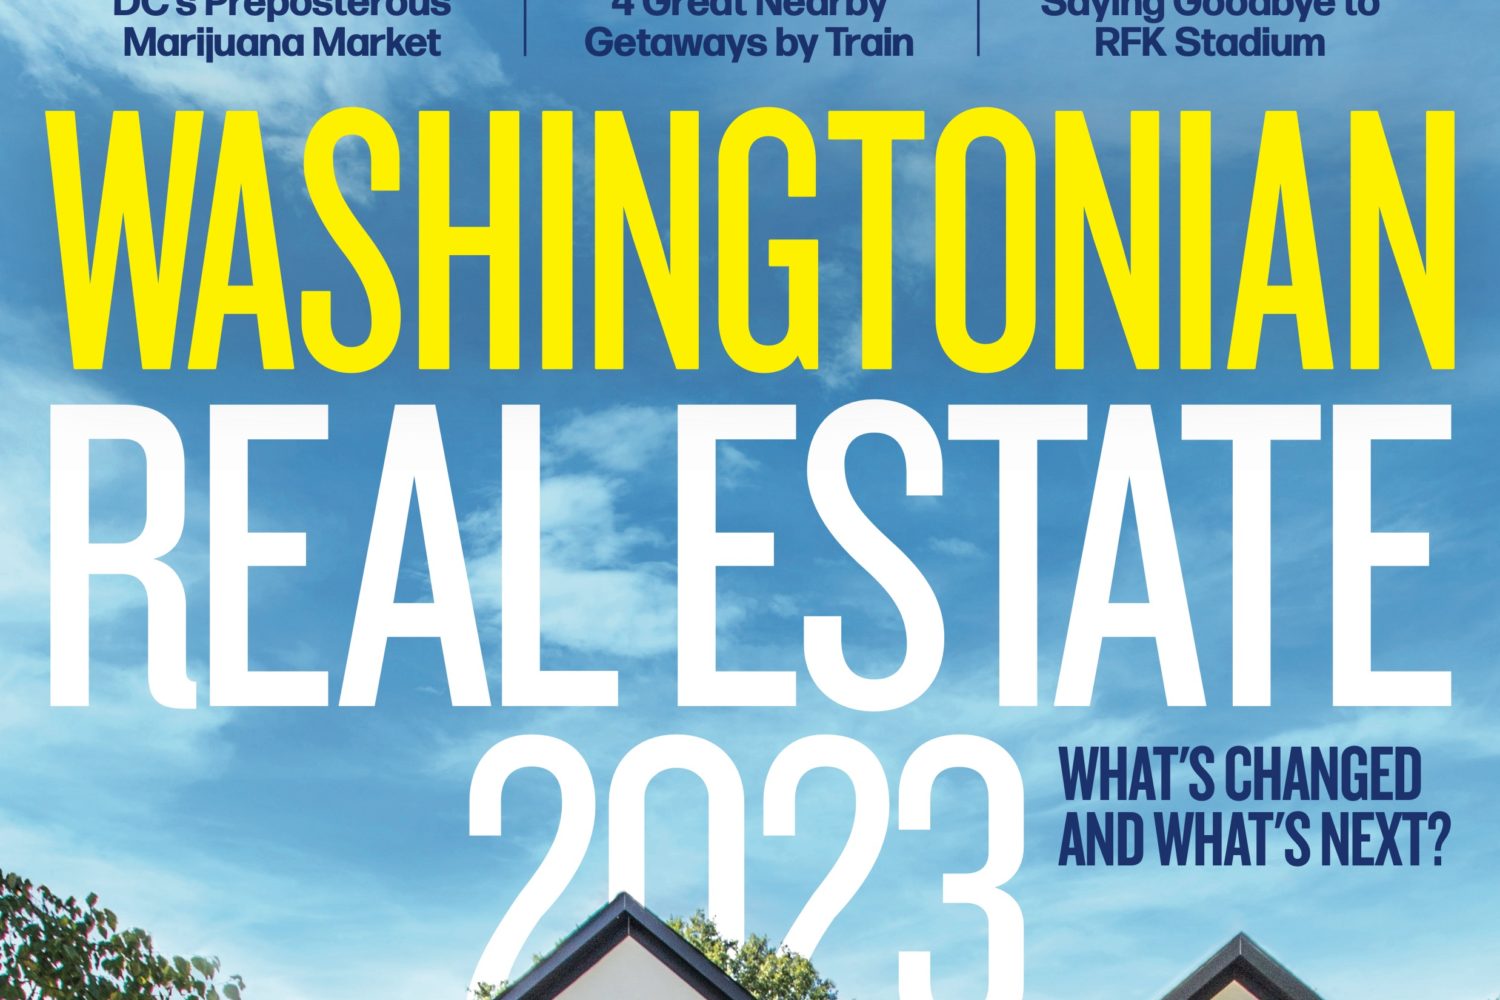 2 Year Subscription to Washingtonian Magazine